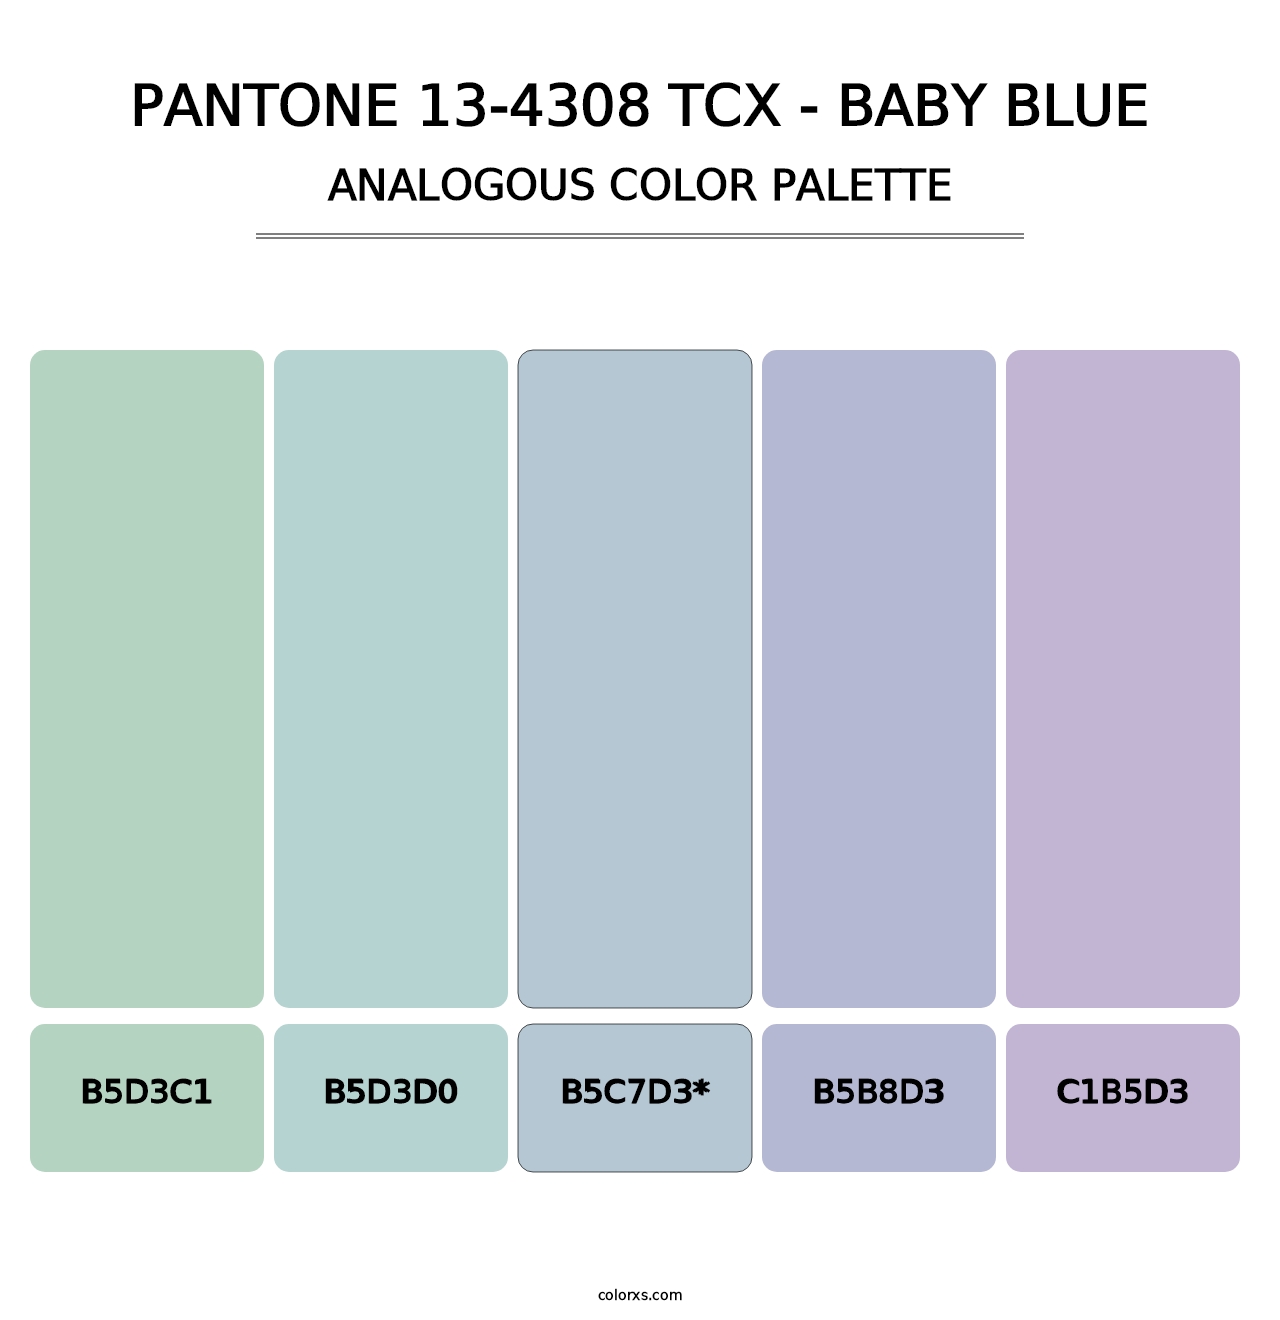 PANTONE 13-4308 TCX - Baby Blue - Analogous Color Palette